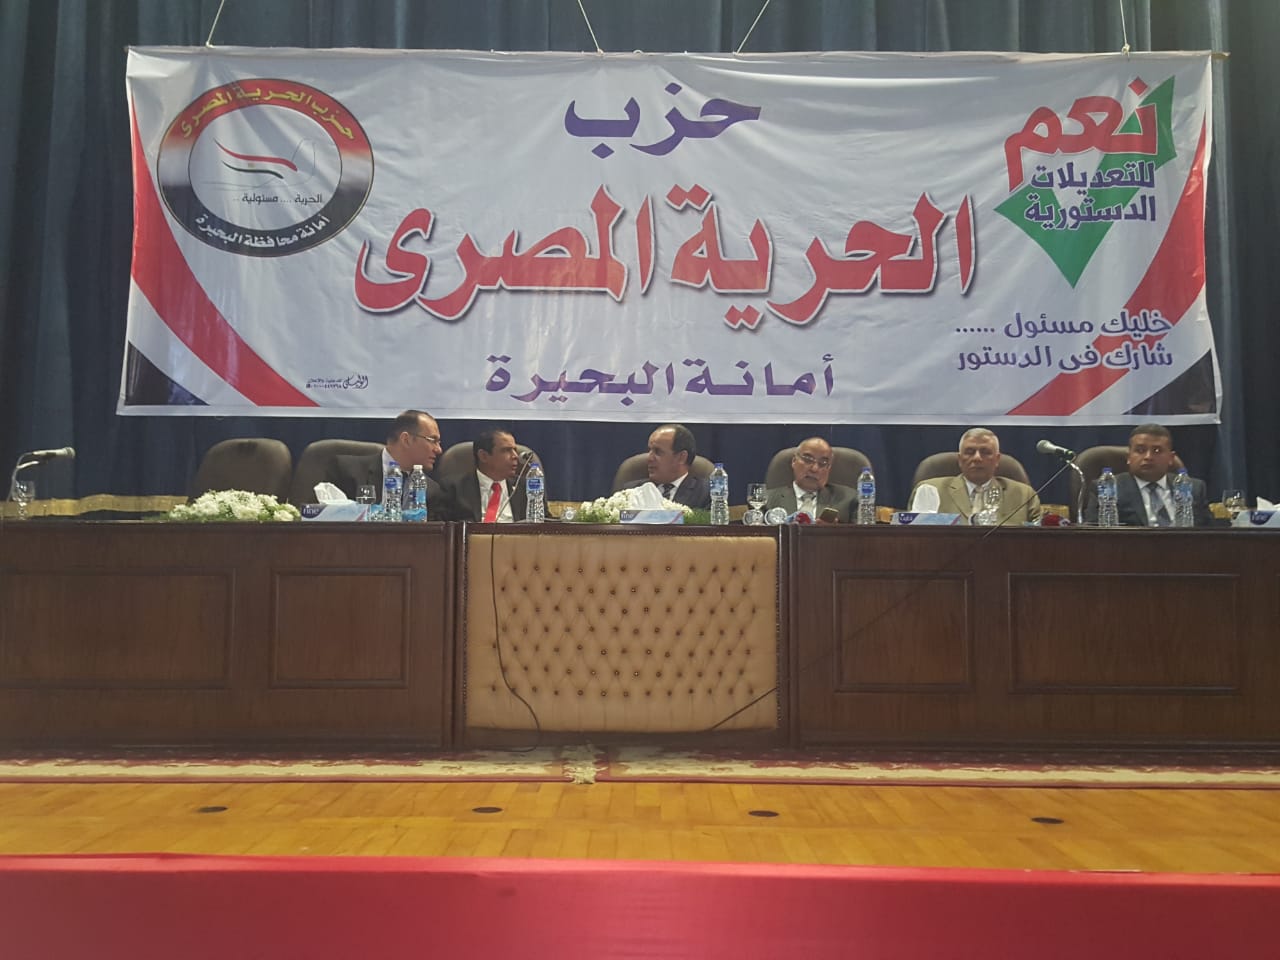   «الحرية المصرى» يقيم مؤتمرا فى المجمع الثقافي بالبحيرة لدعم التعديلات الدستورية